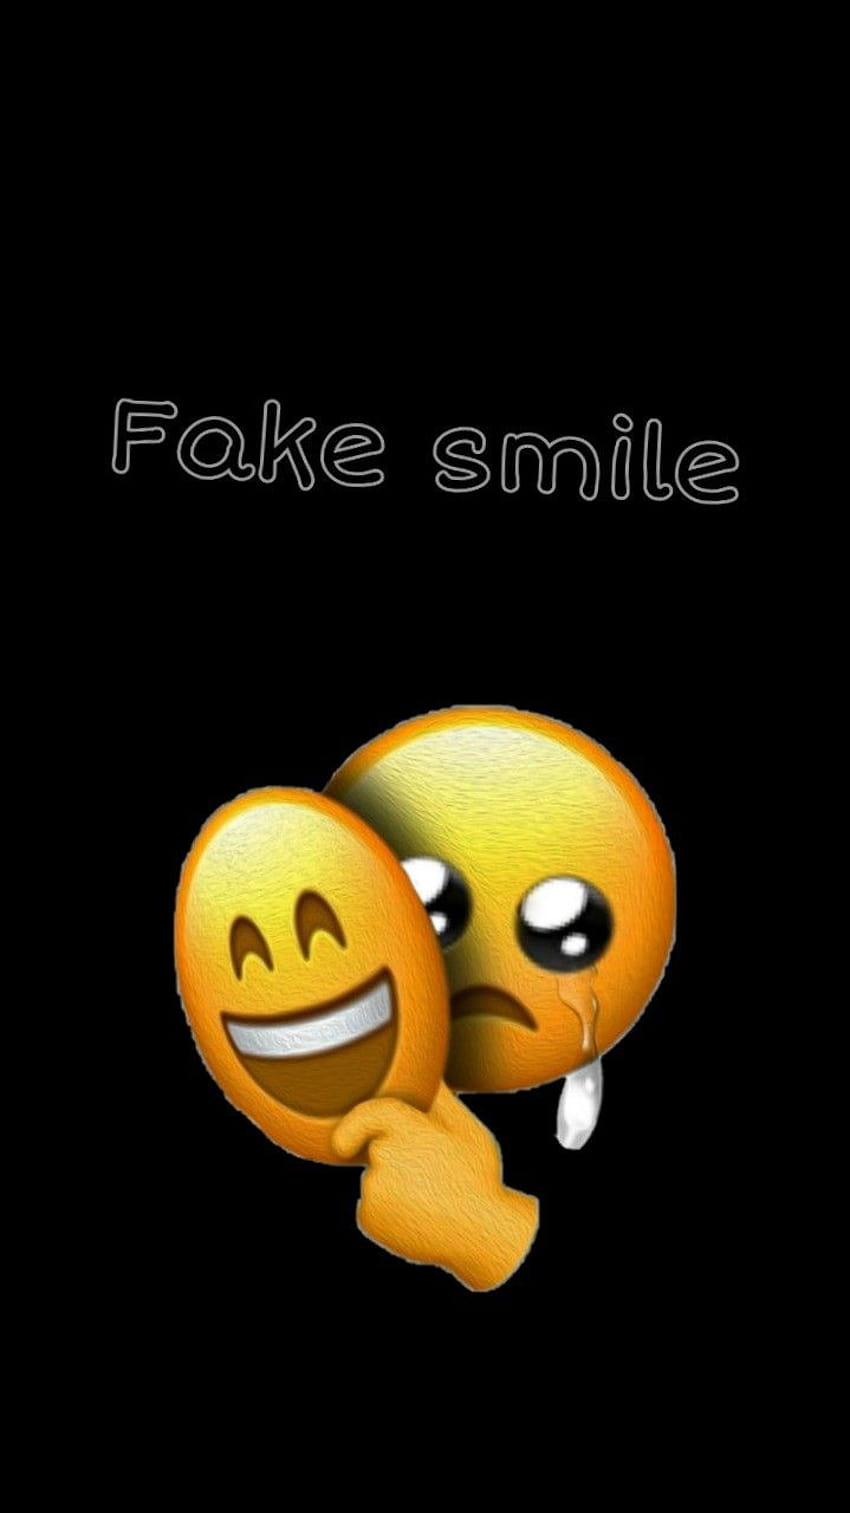 Pin on My Saves, fake smile emoji HD phone wallpaper